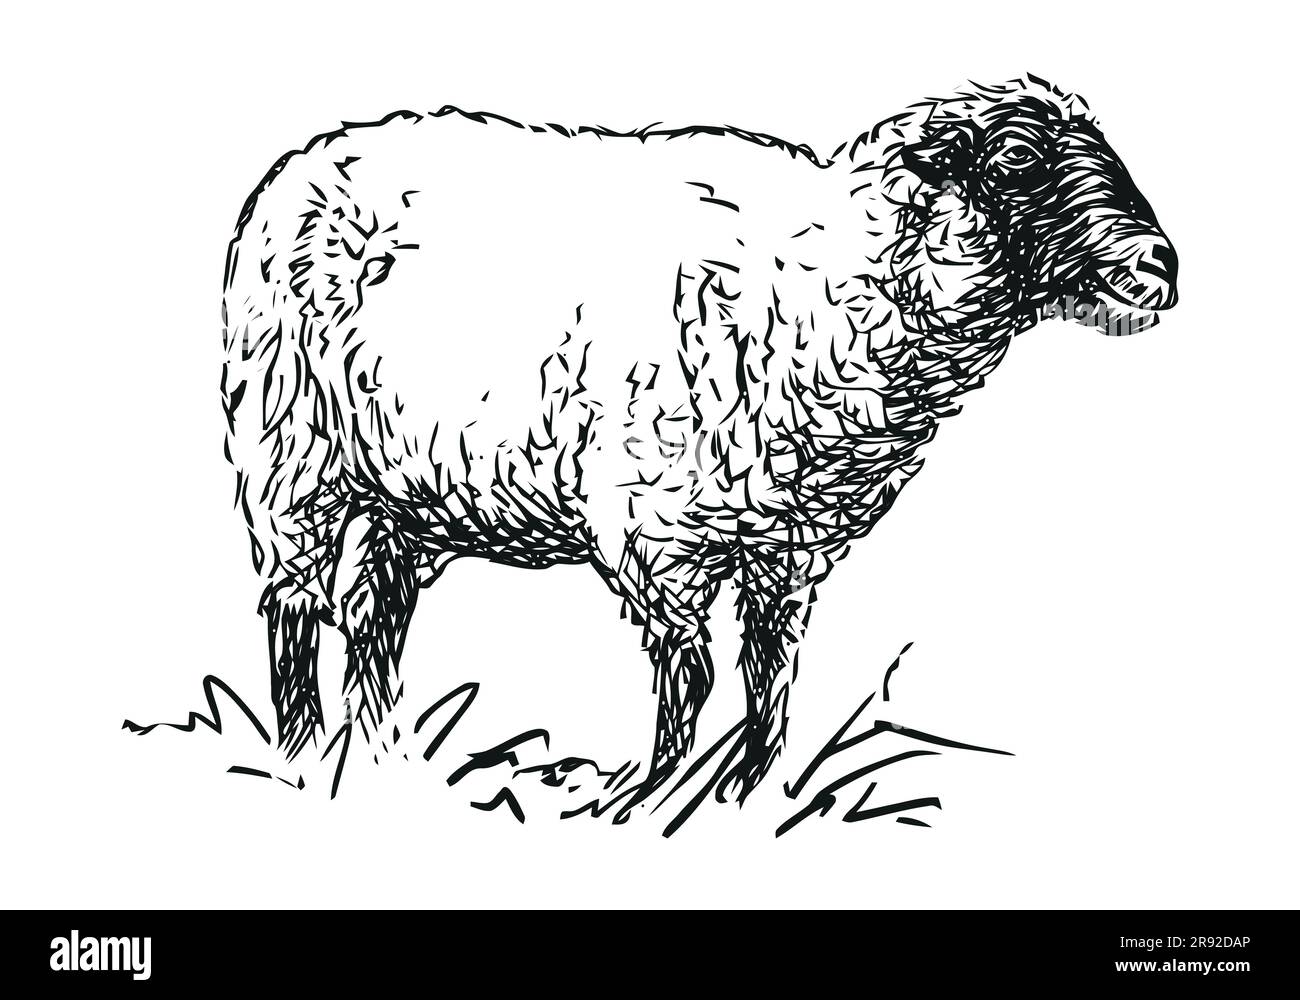 mouton - animal de ferme, dessin manuel de vecteur noir et blanc, isolé sur fond blanc Illustration de Vecteur